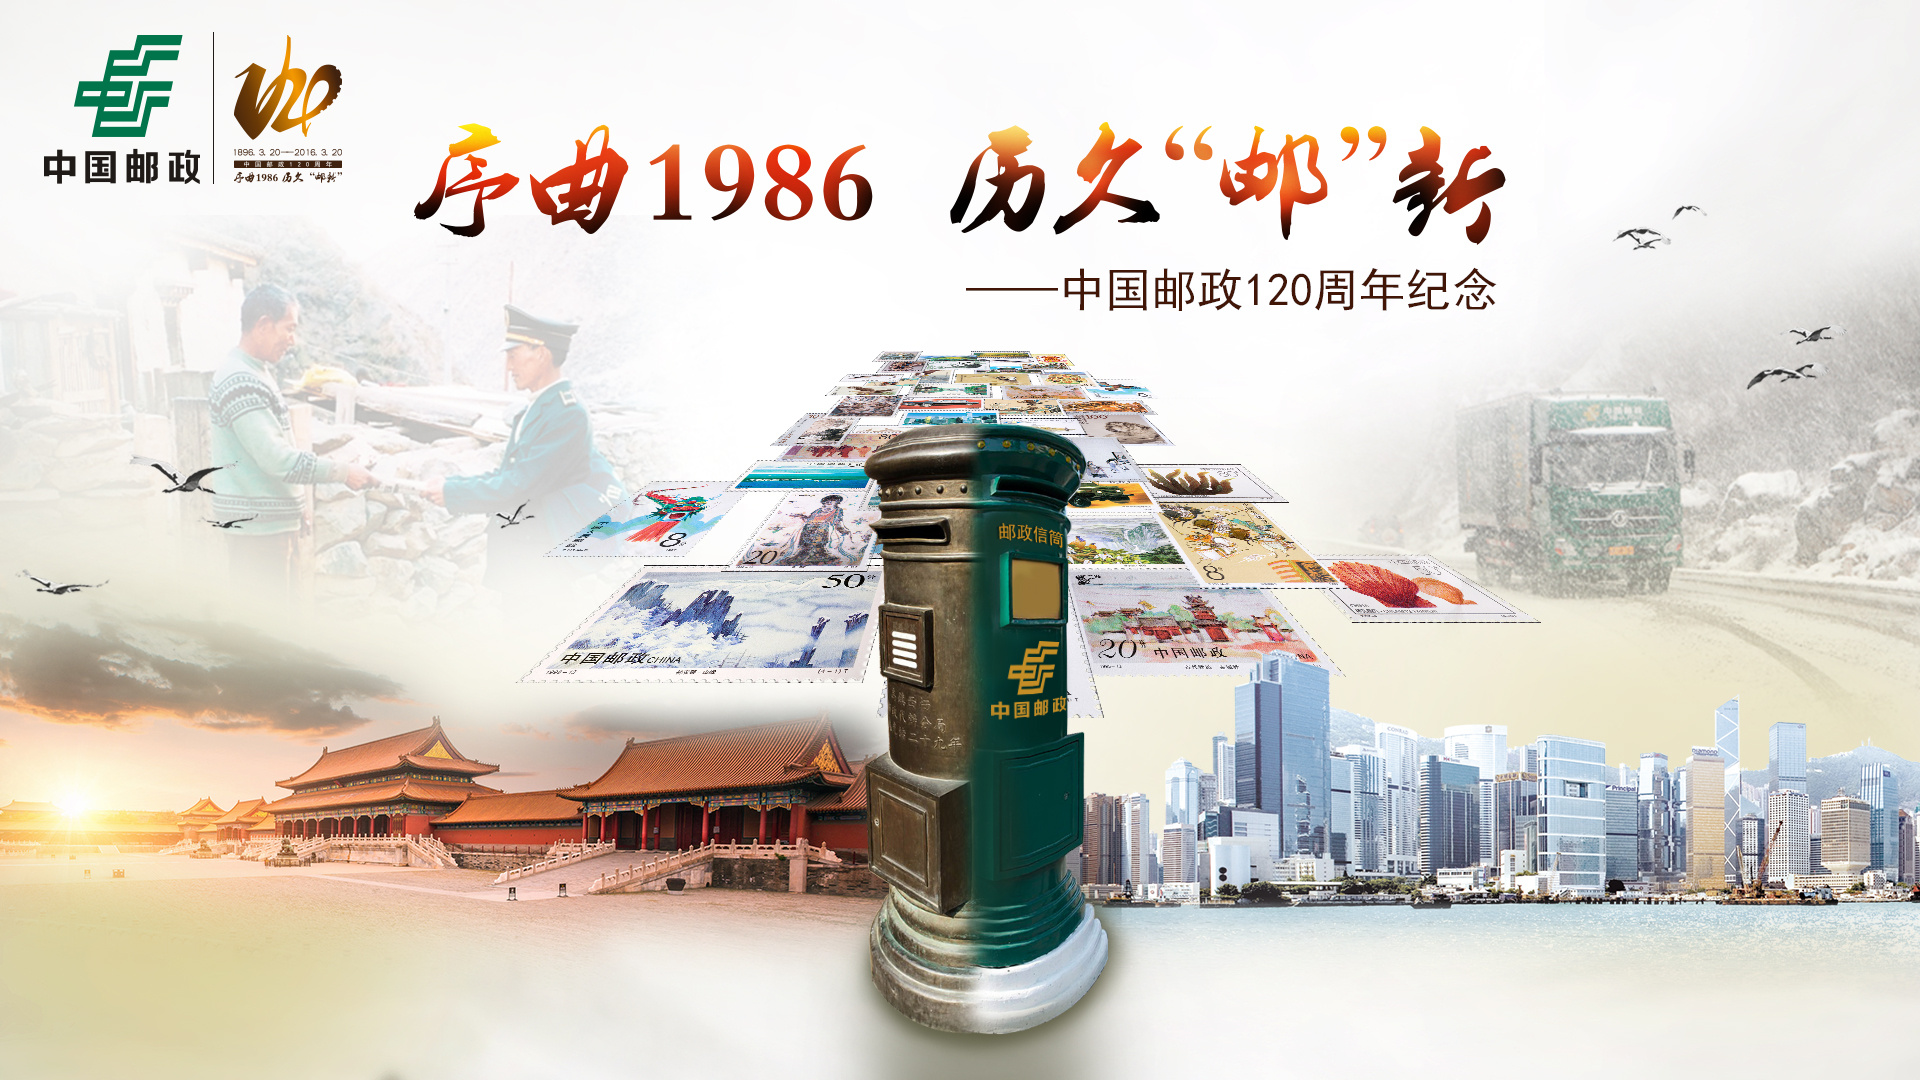 中国邮政logo设计用新色调-尼高设计公司